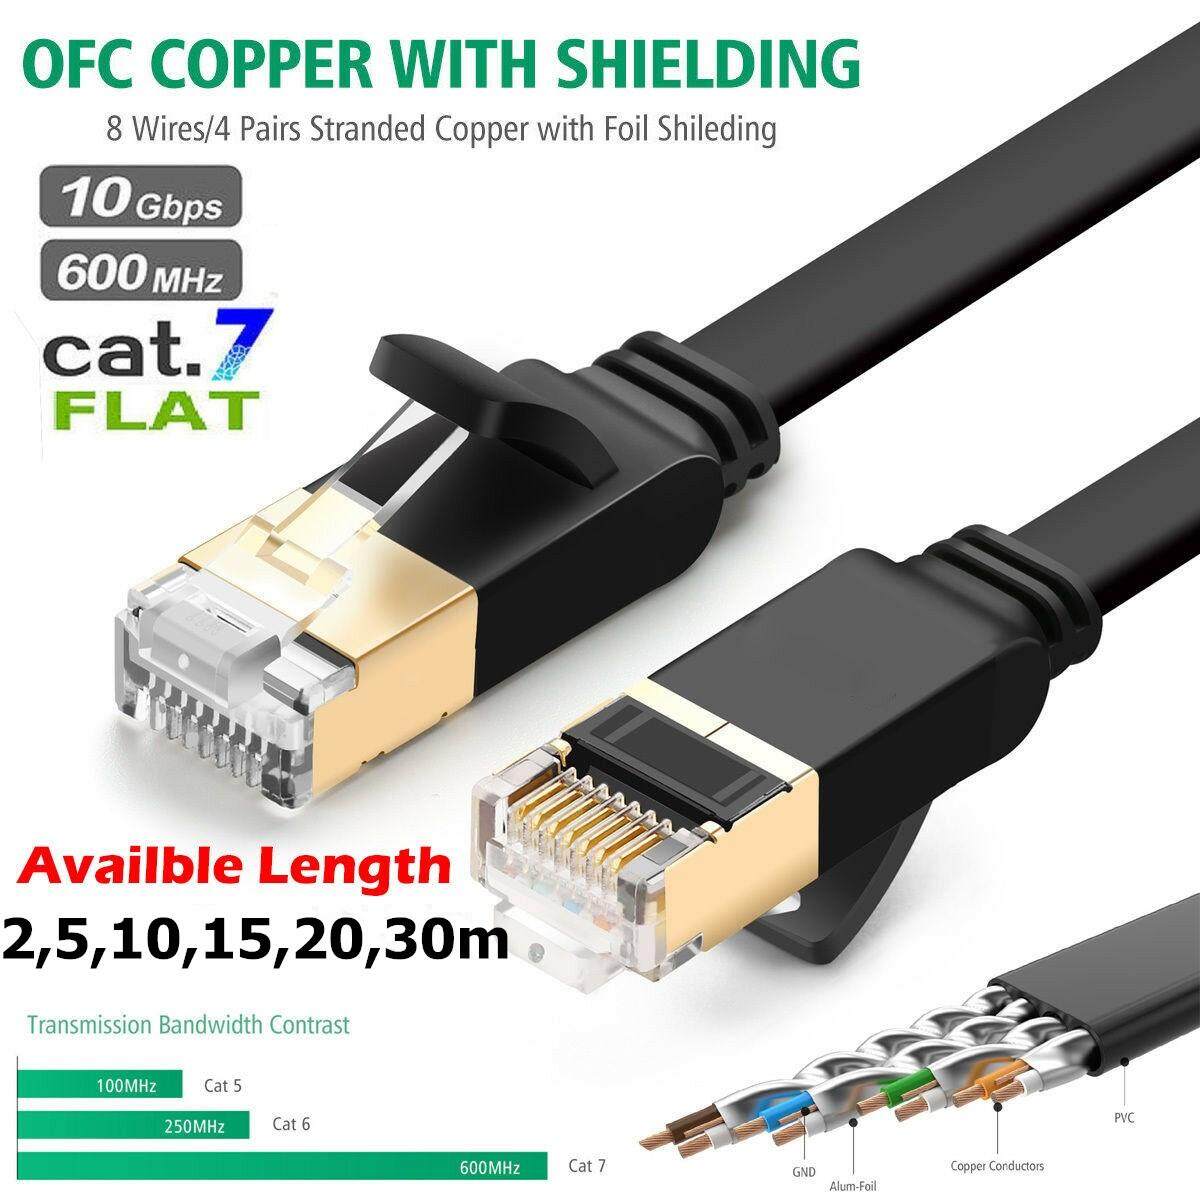 สาย Lan สำเร็จรูปพร้อมใช้งาน สายแบน Cat7 RJ45 Ethernet Network Cable Cat7 Lead 10Gbp 600Mhz LAN UTP Patch Gold plated 2m 5m 10m 15m 20m 30m